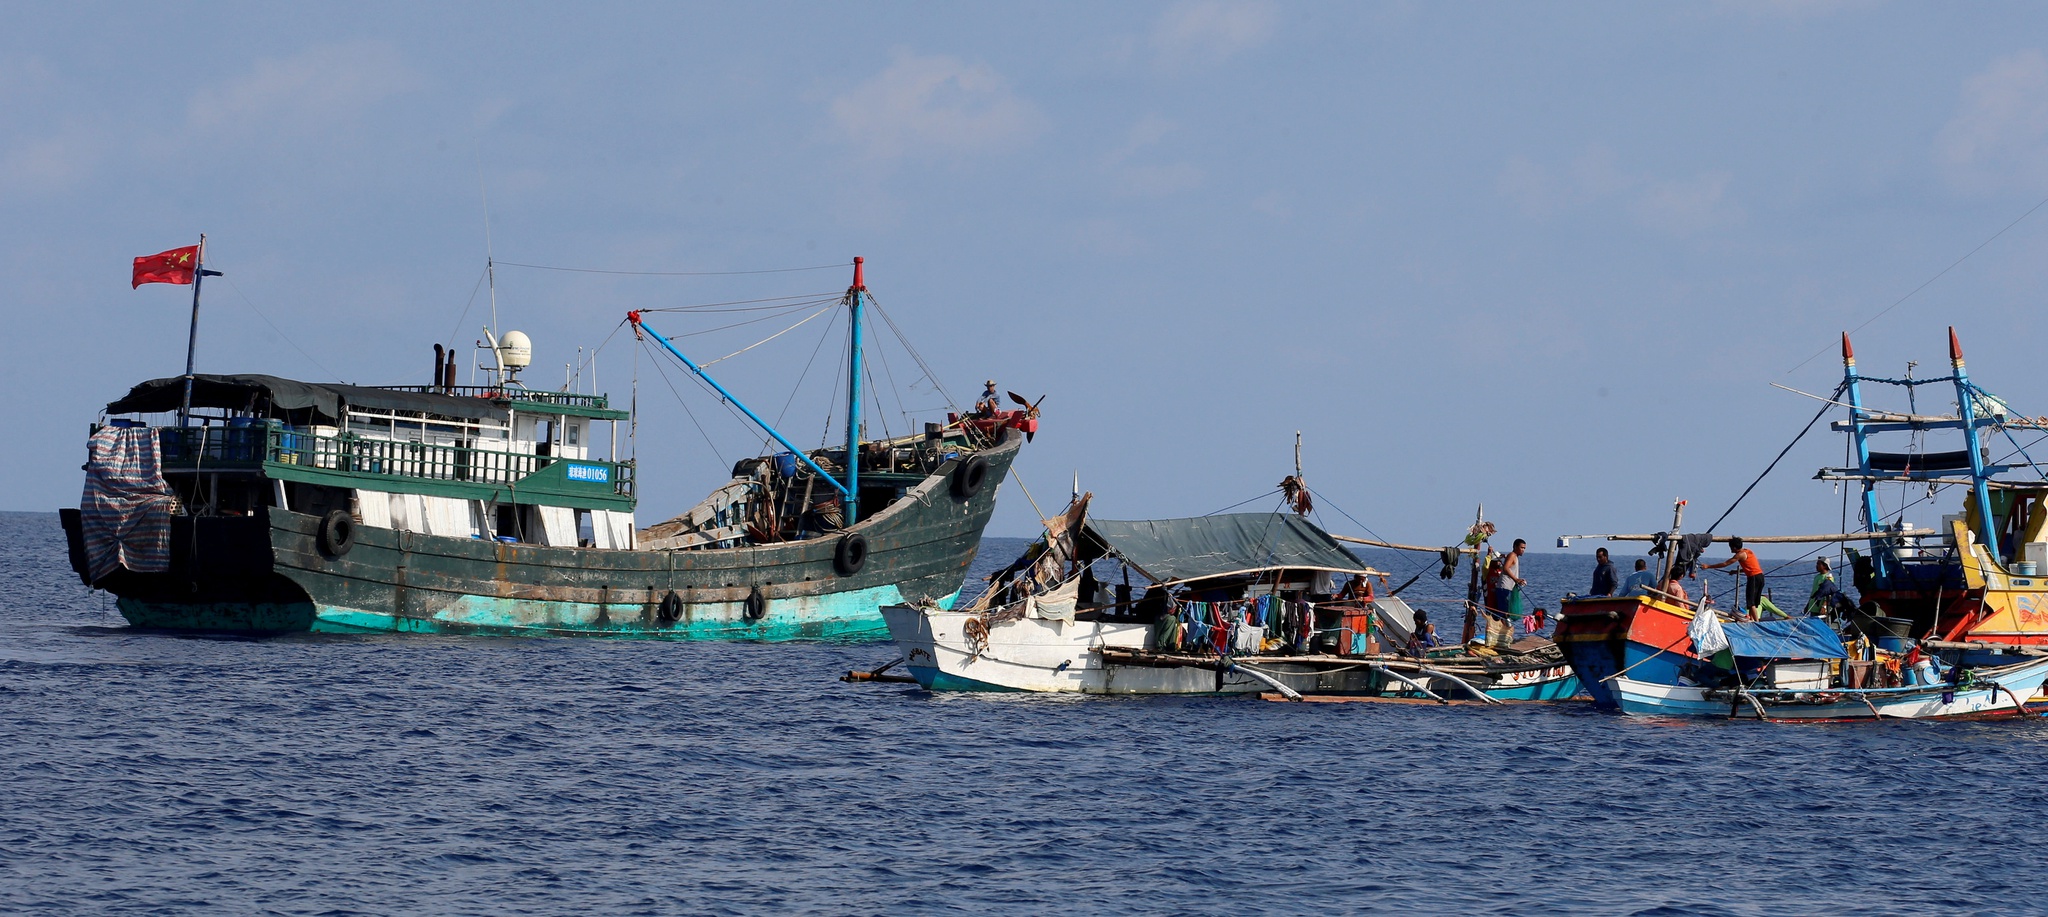 Philippines không công nhận lệnh cấm đánh bắt cá của Trung Quốc ở Biển Đông - Ảnh 1.